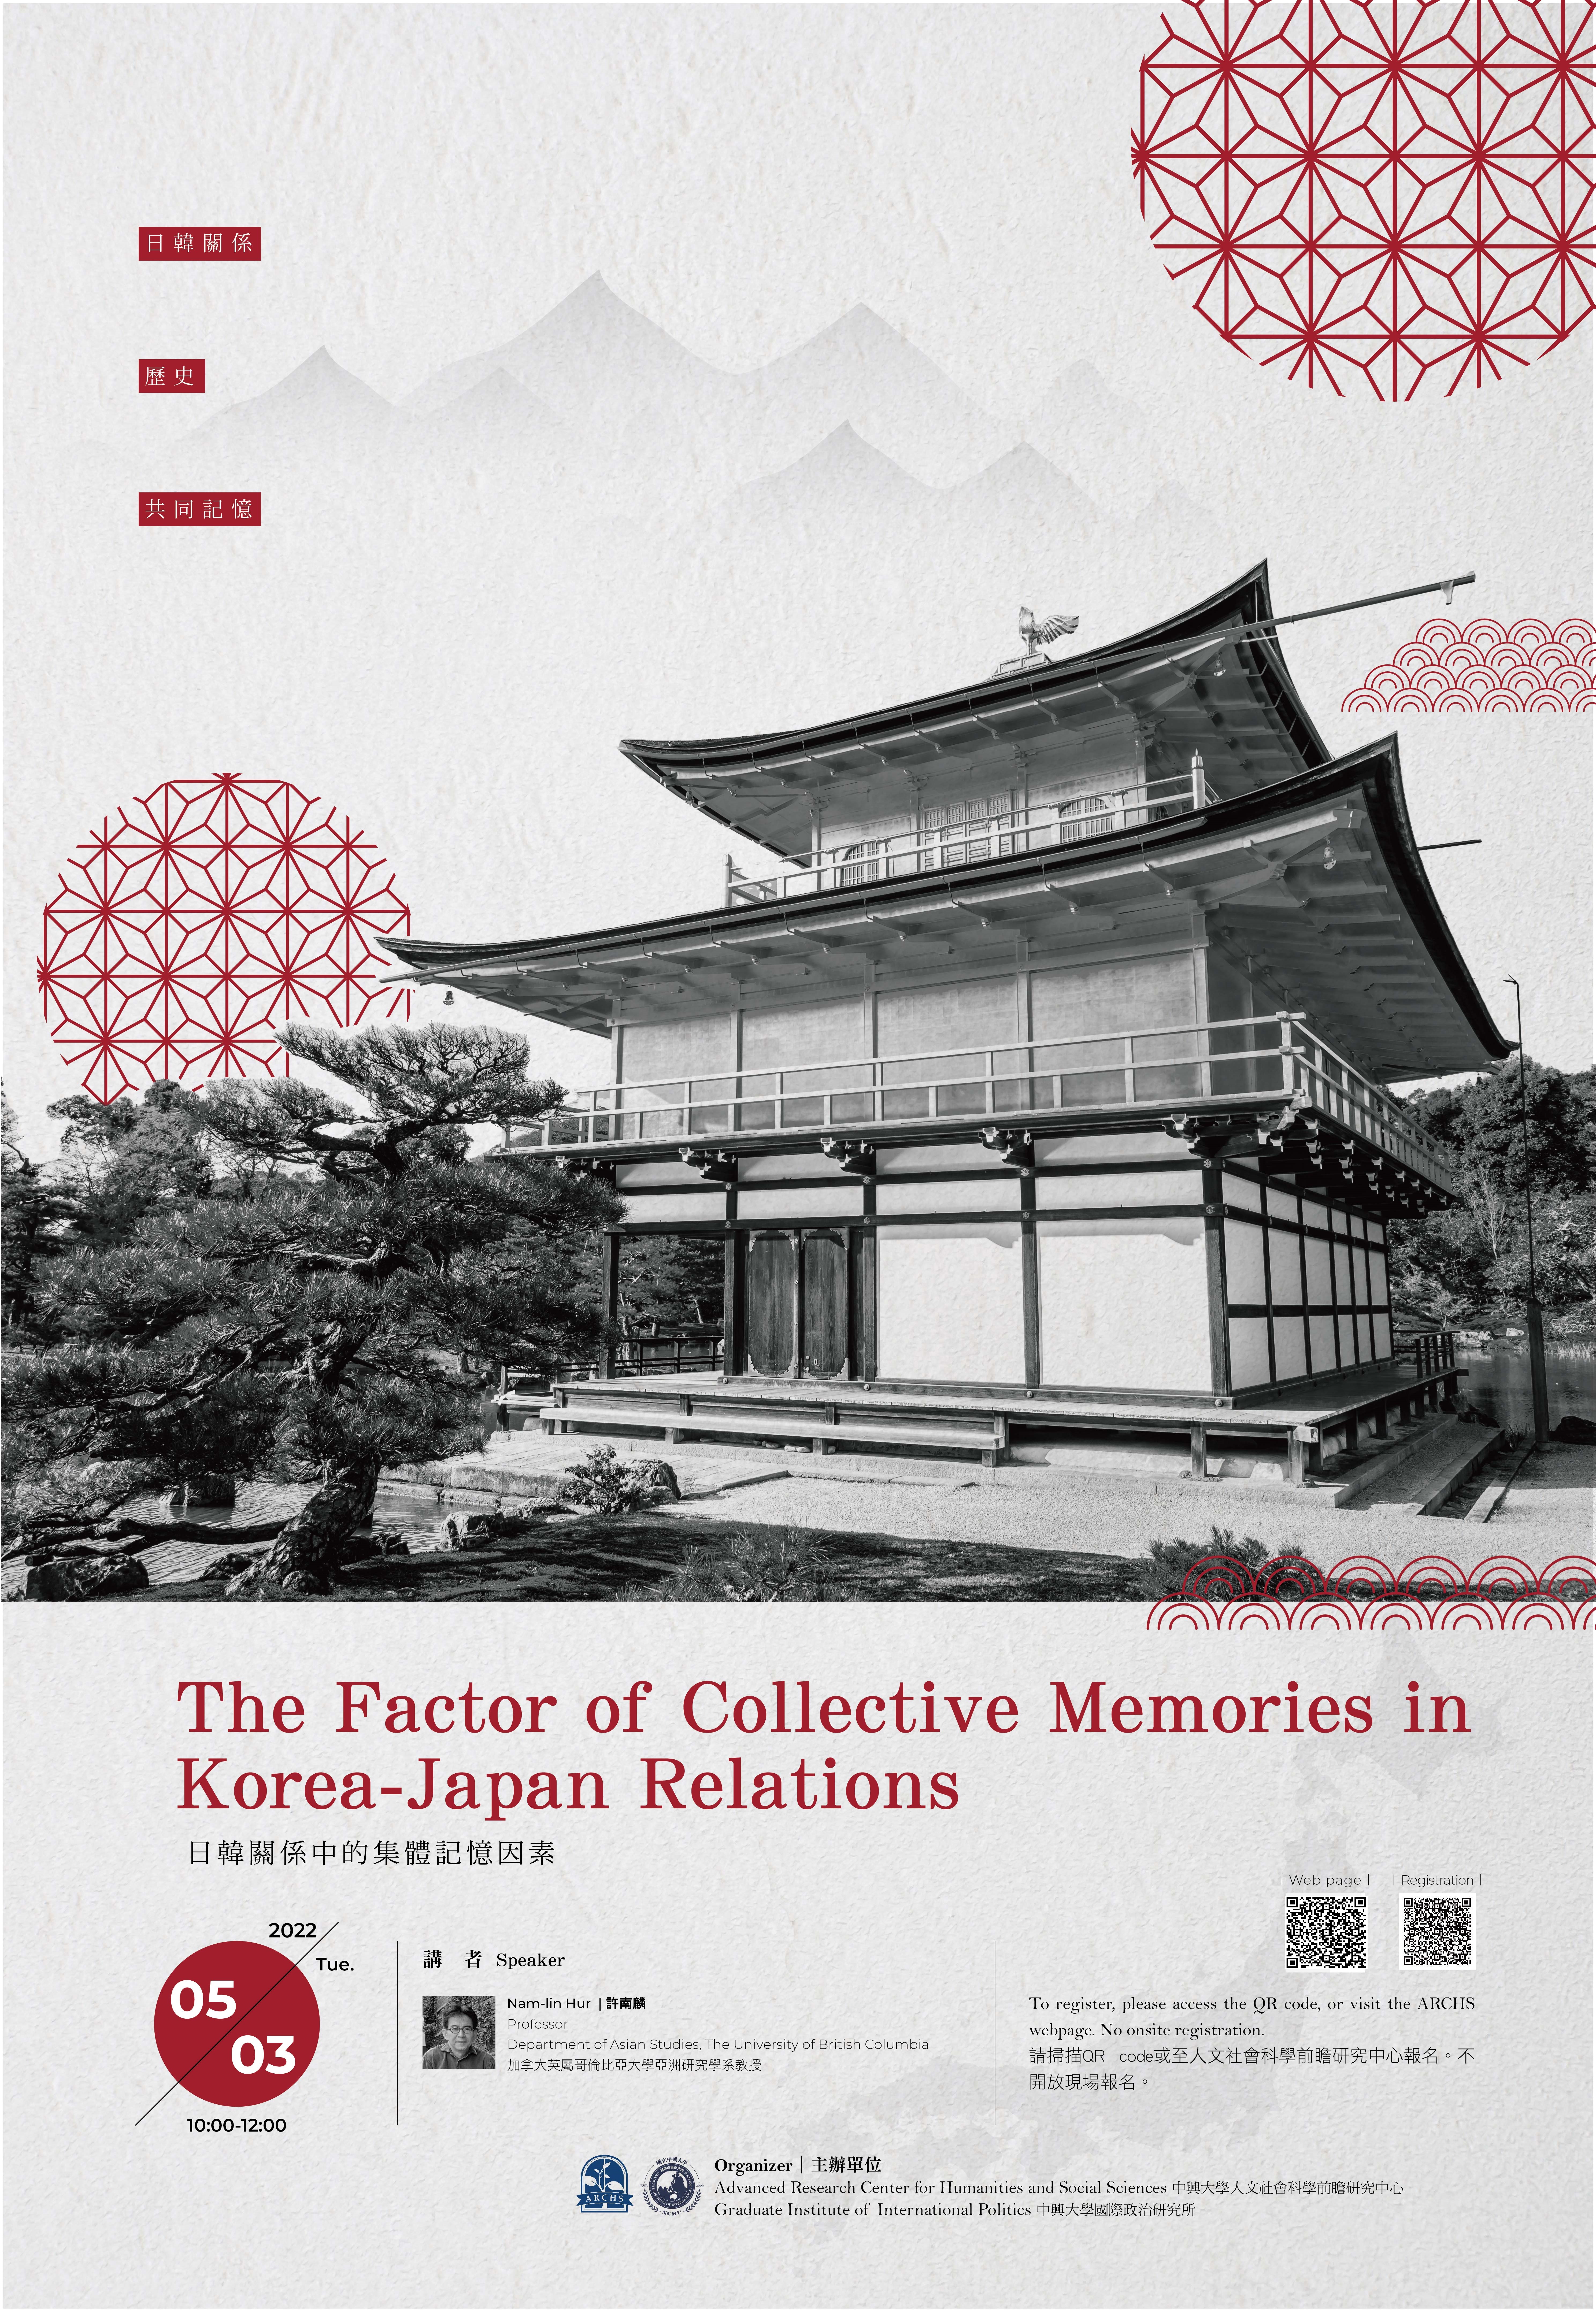 【亞洲前瞻講座】第四場 The Factor of Collective Memories in Korea-Japan Relations (活動轉知)